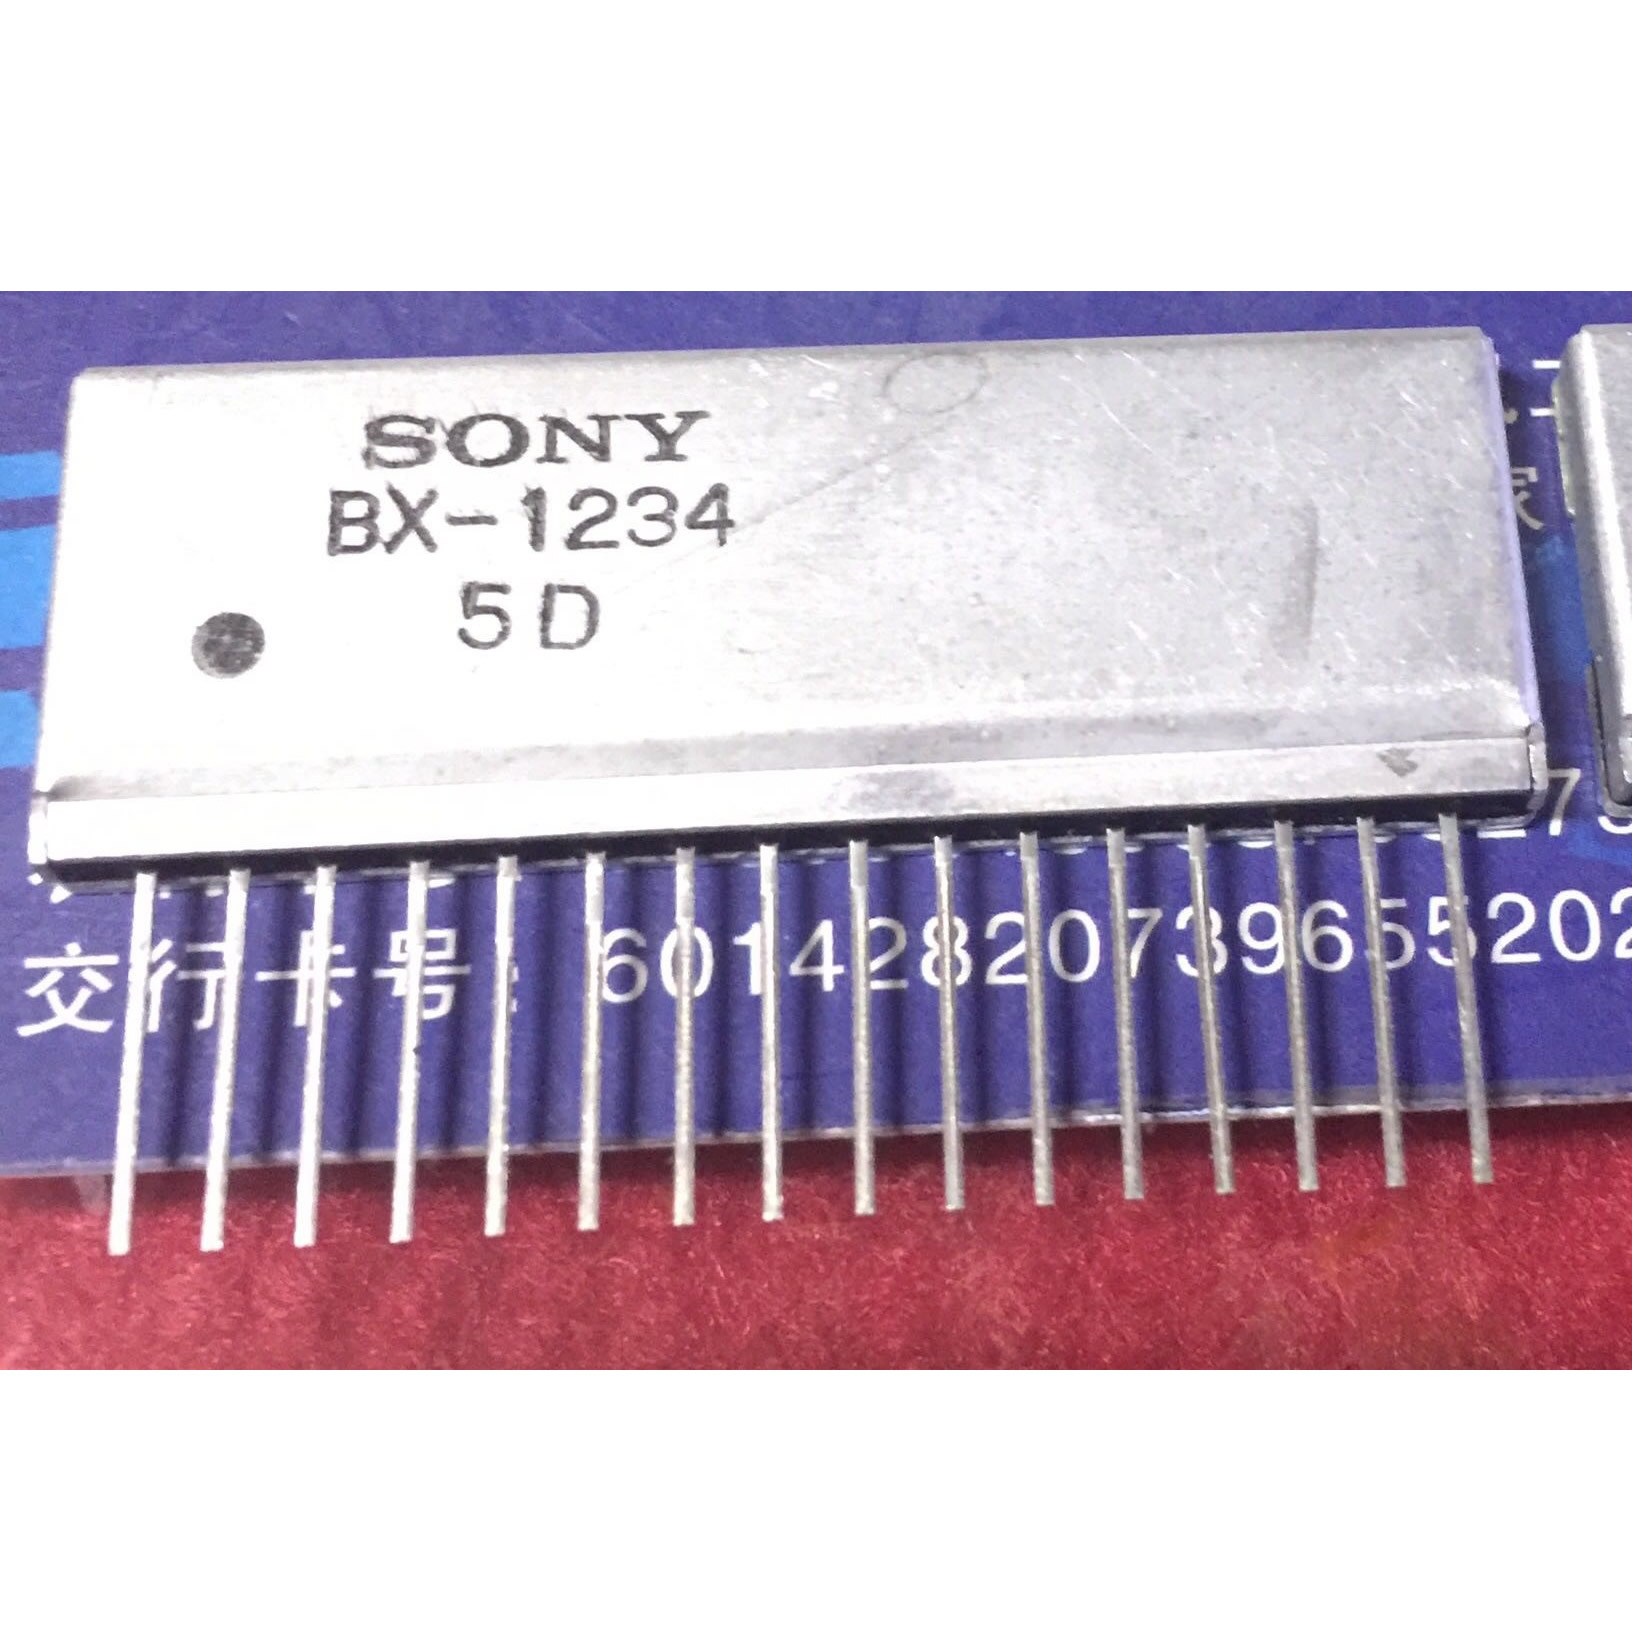 BX-1234 New Original 5PCS/LOT